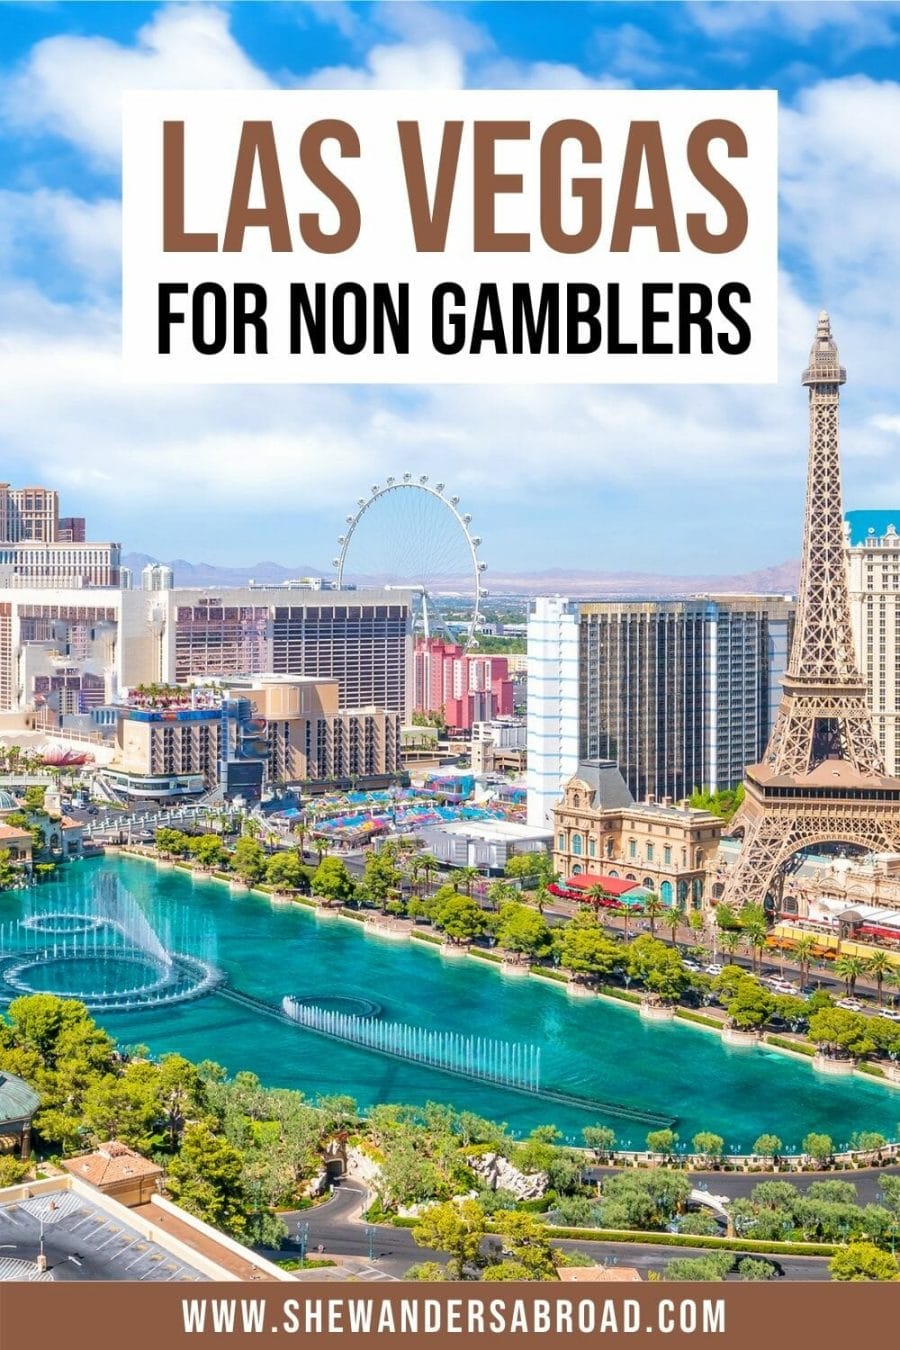 35 Fun Things to Do in Vegas Besides Gambling